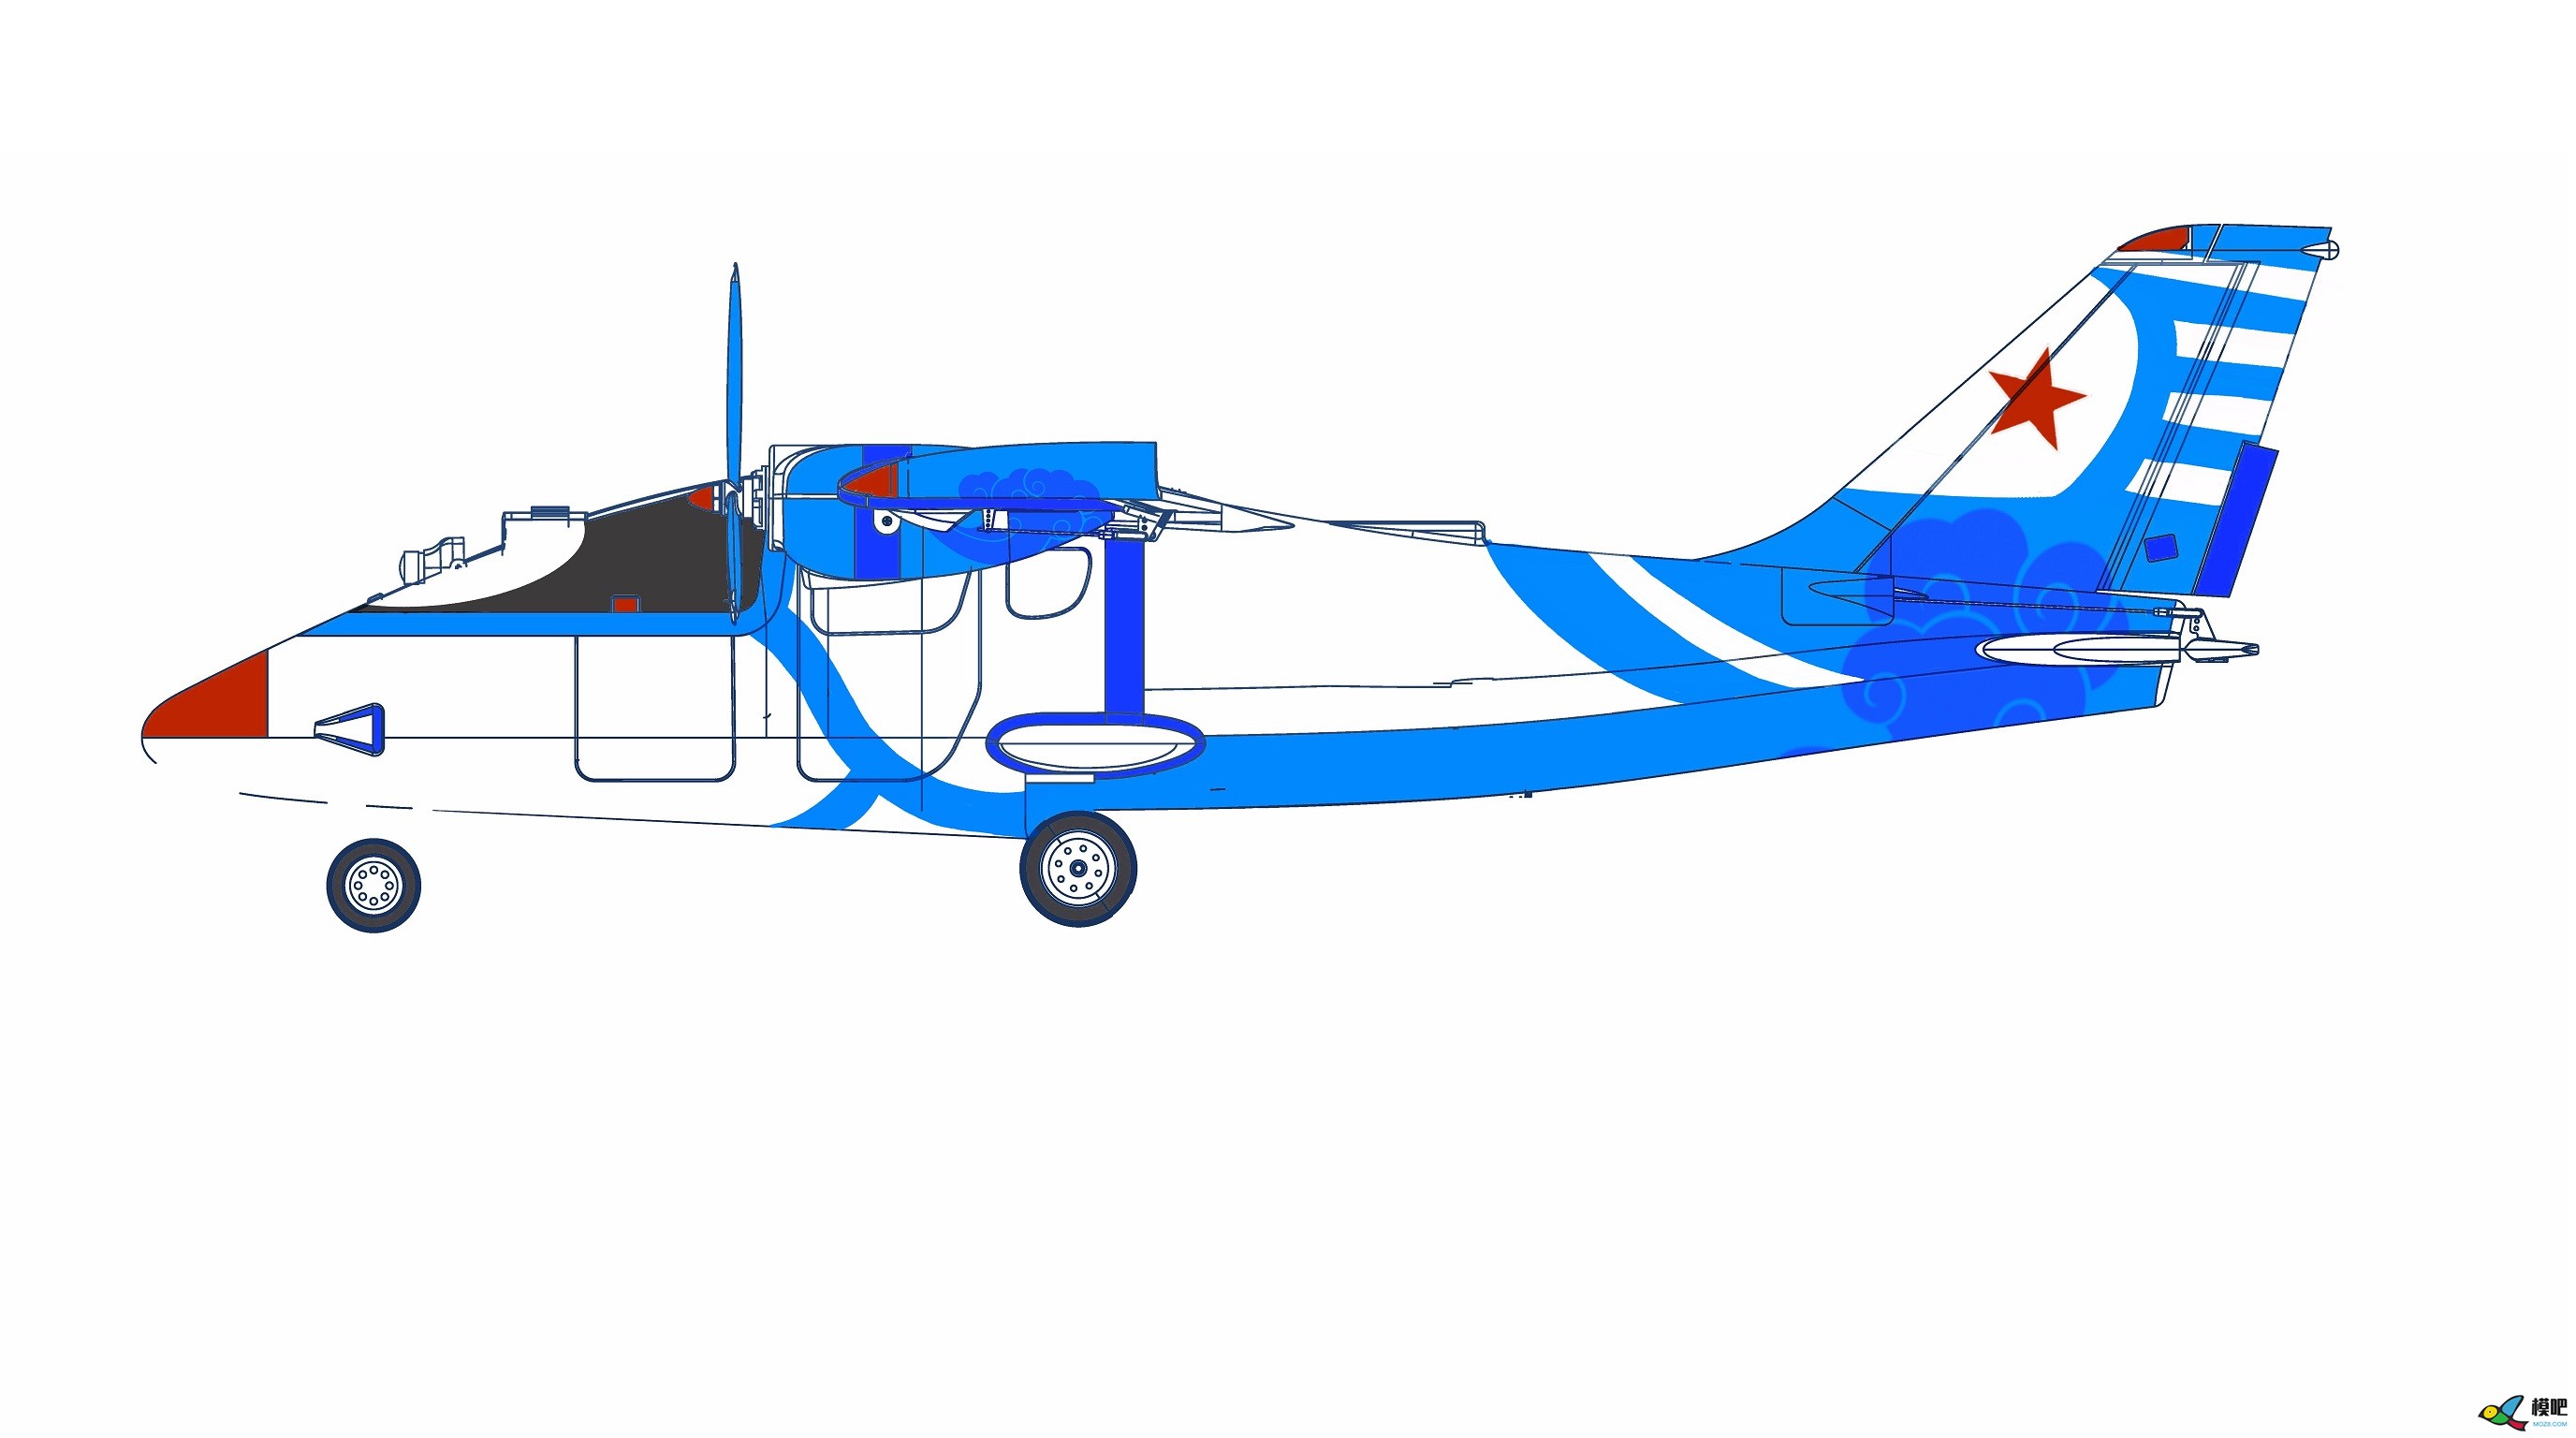 2020年第七期免费送模型：中航电Binary班纳瑞FPV飞机涂装大赛  作者:飞舞天水间 2669 